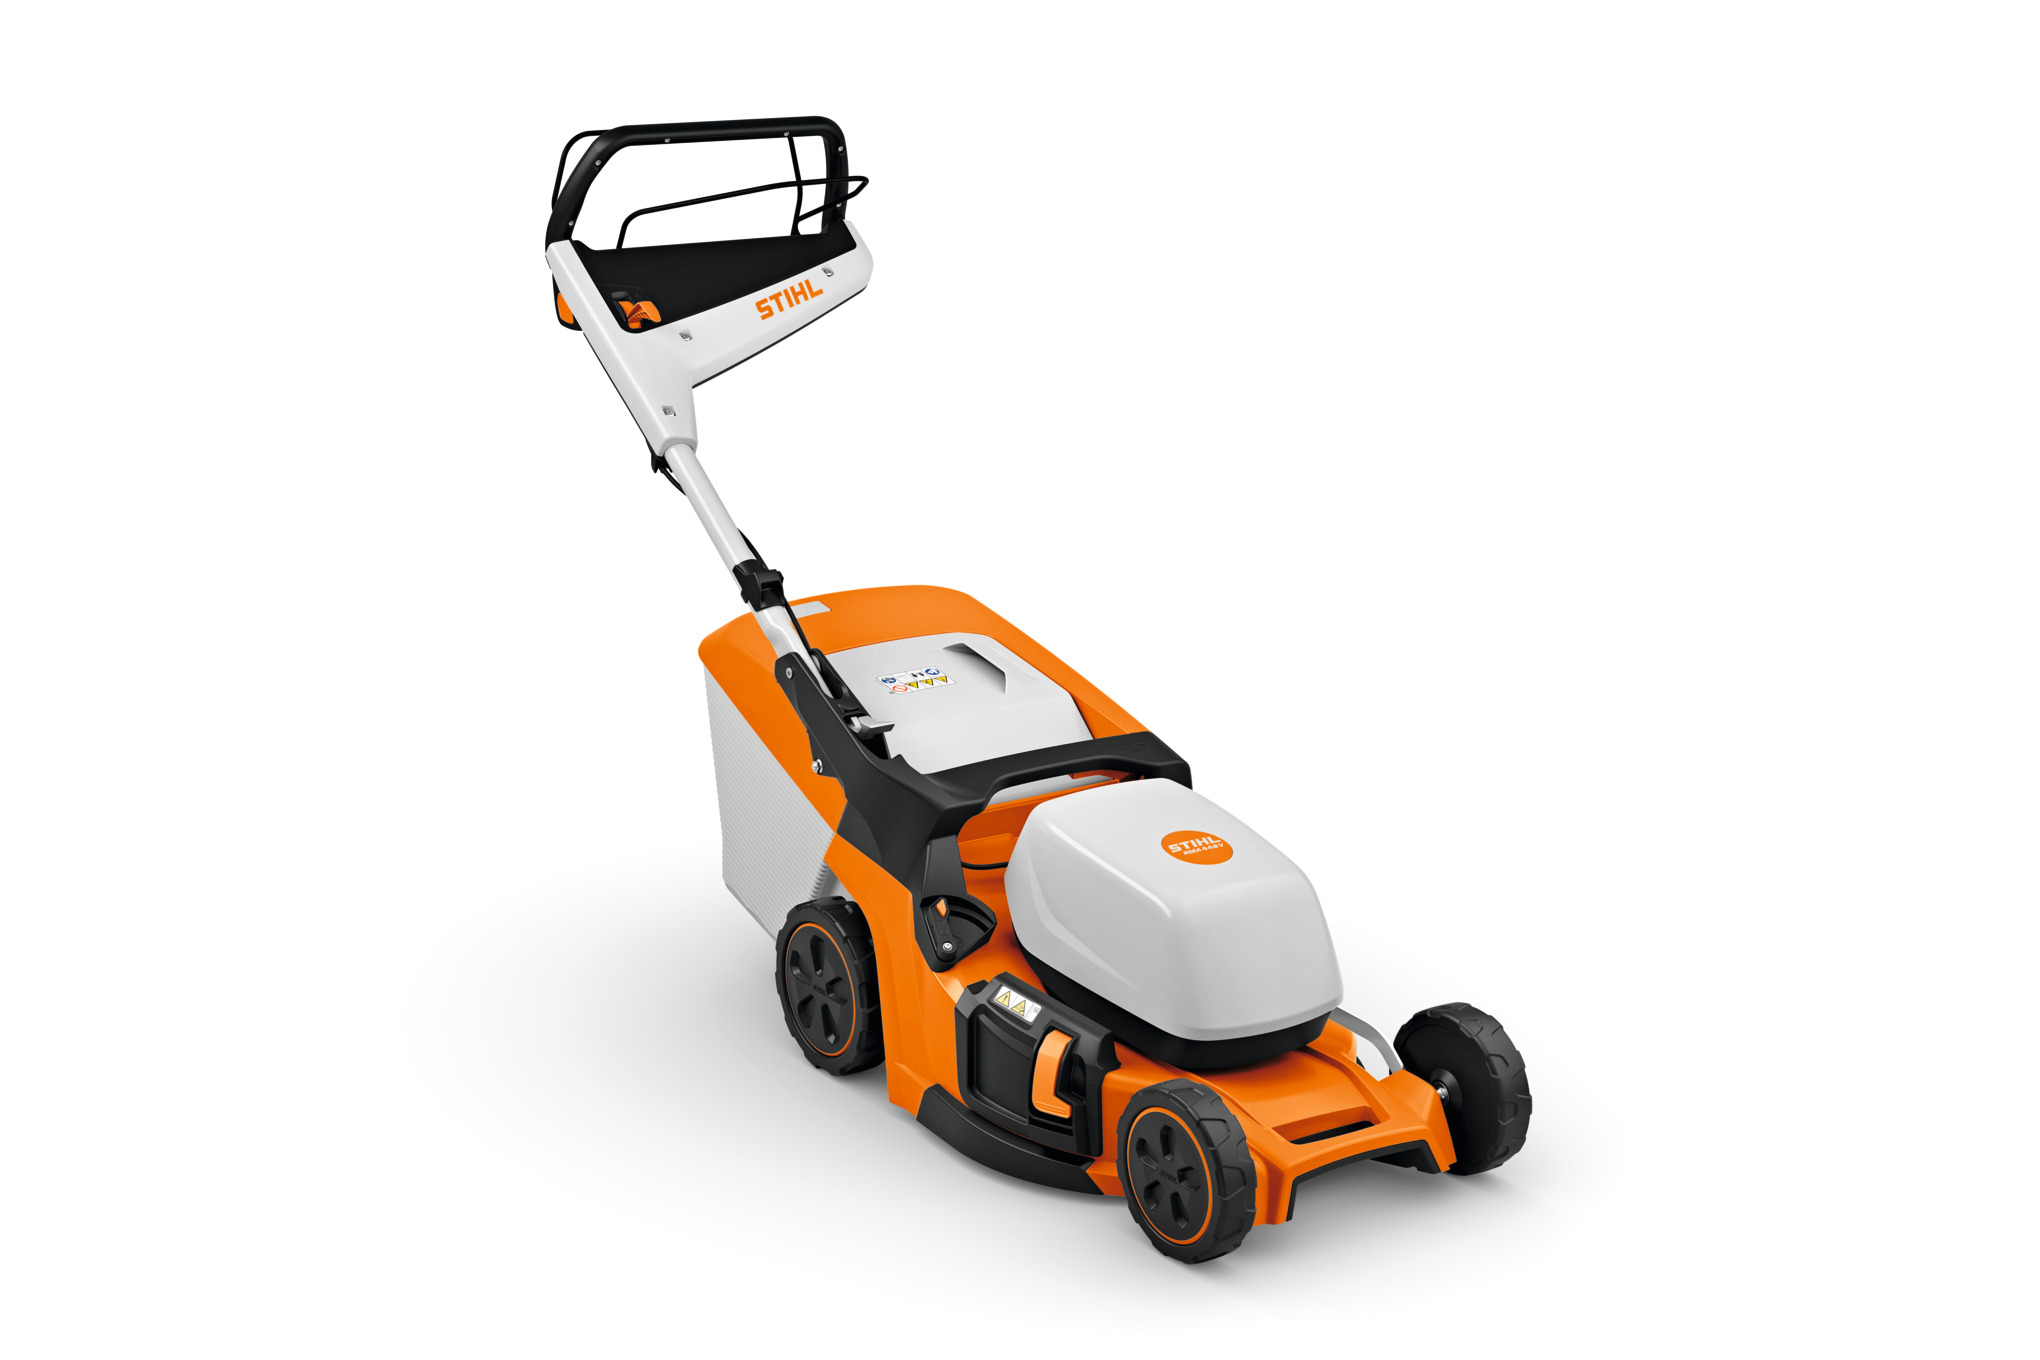 RMA 448 Cordless Lawn Mower – AK System